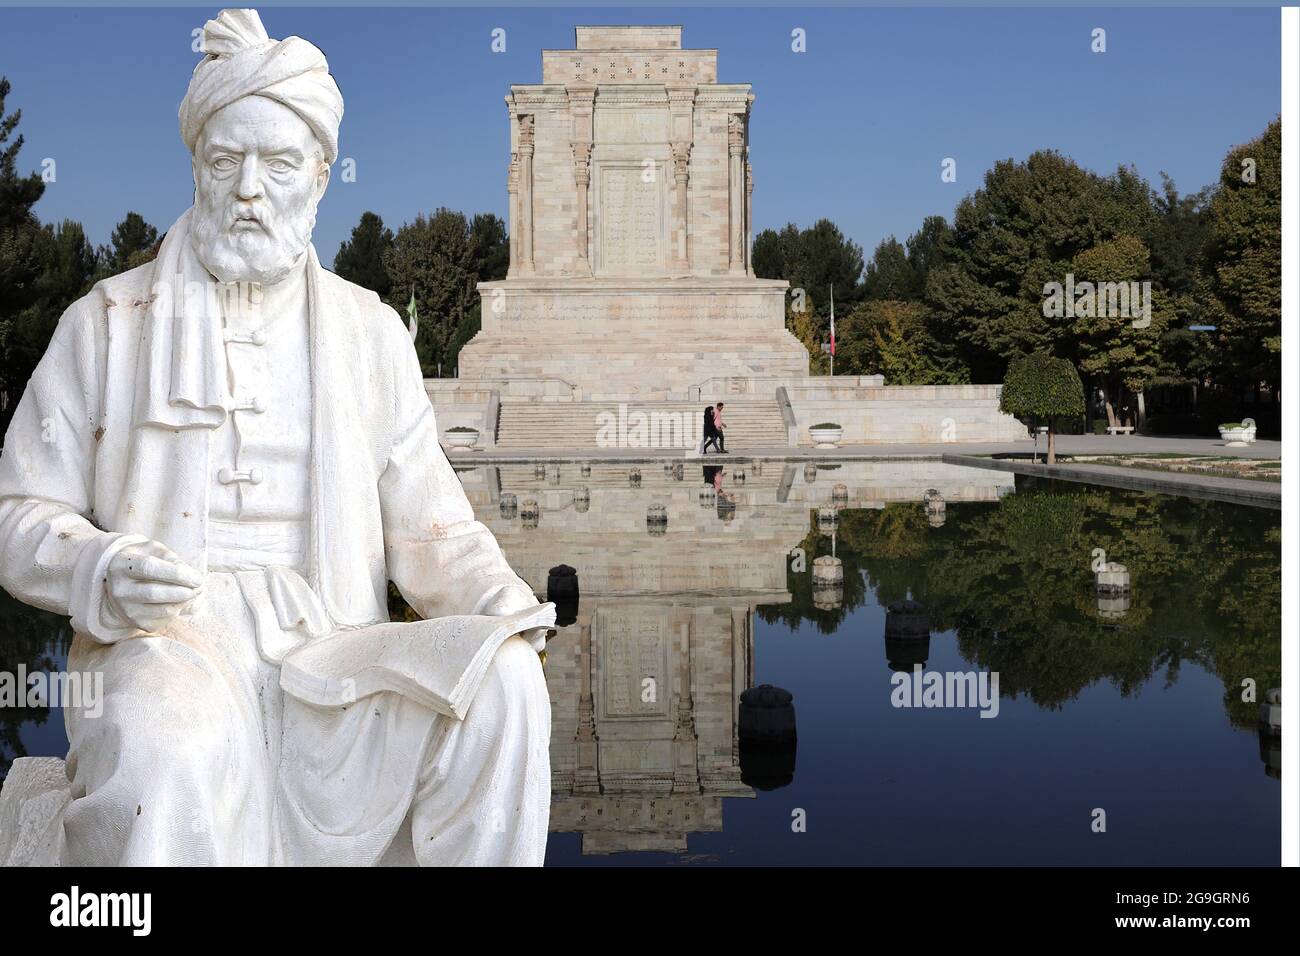 Das Denkmal für den persischen Dichter Ferdowsi ivor seinem Mausoleo in Tus bei Maschhad Foto Stock